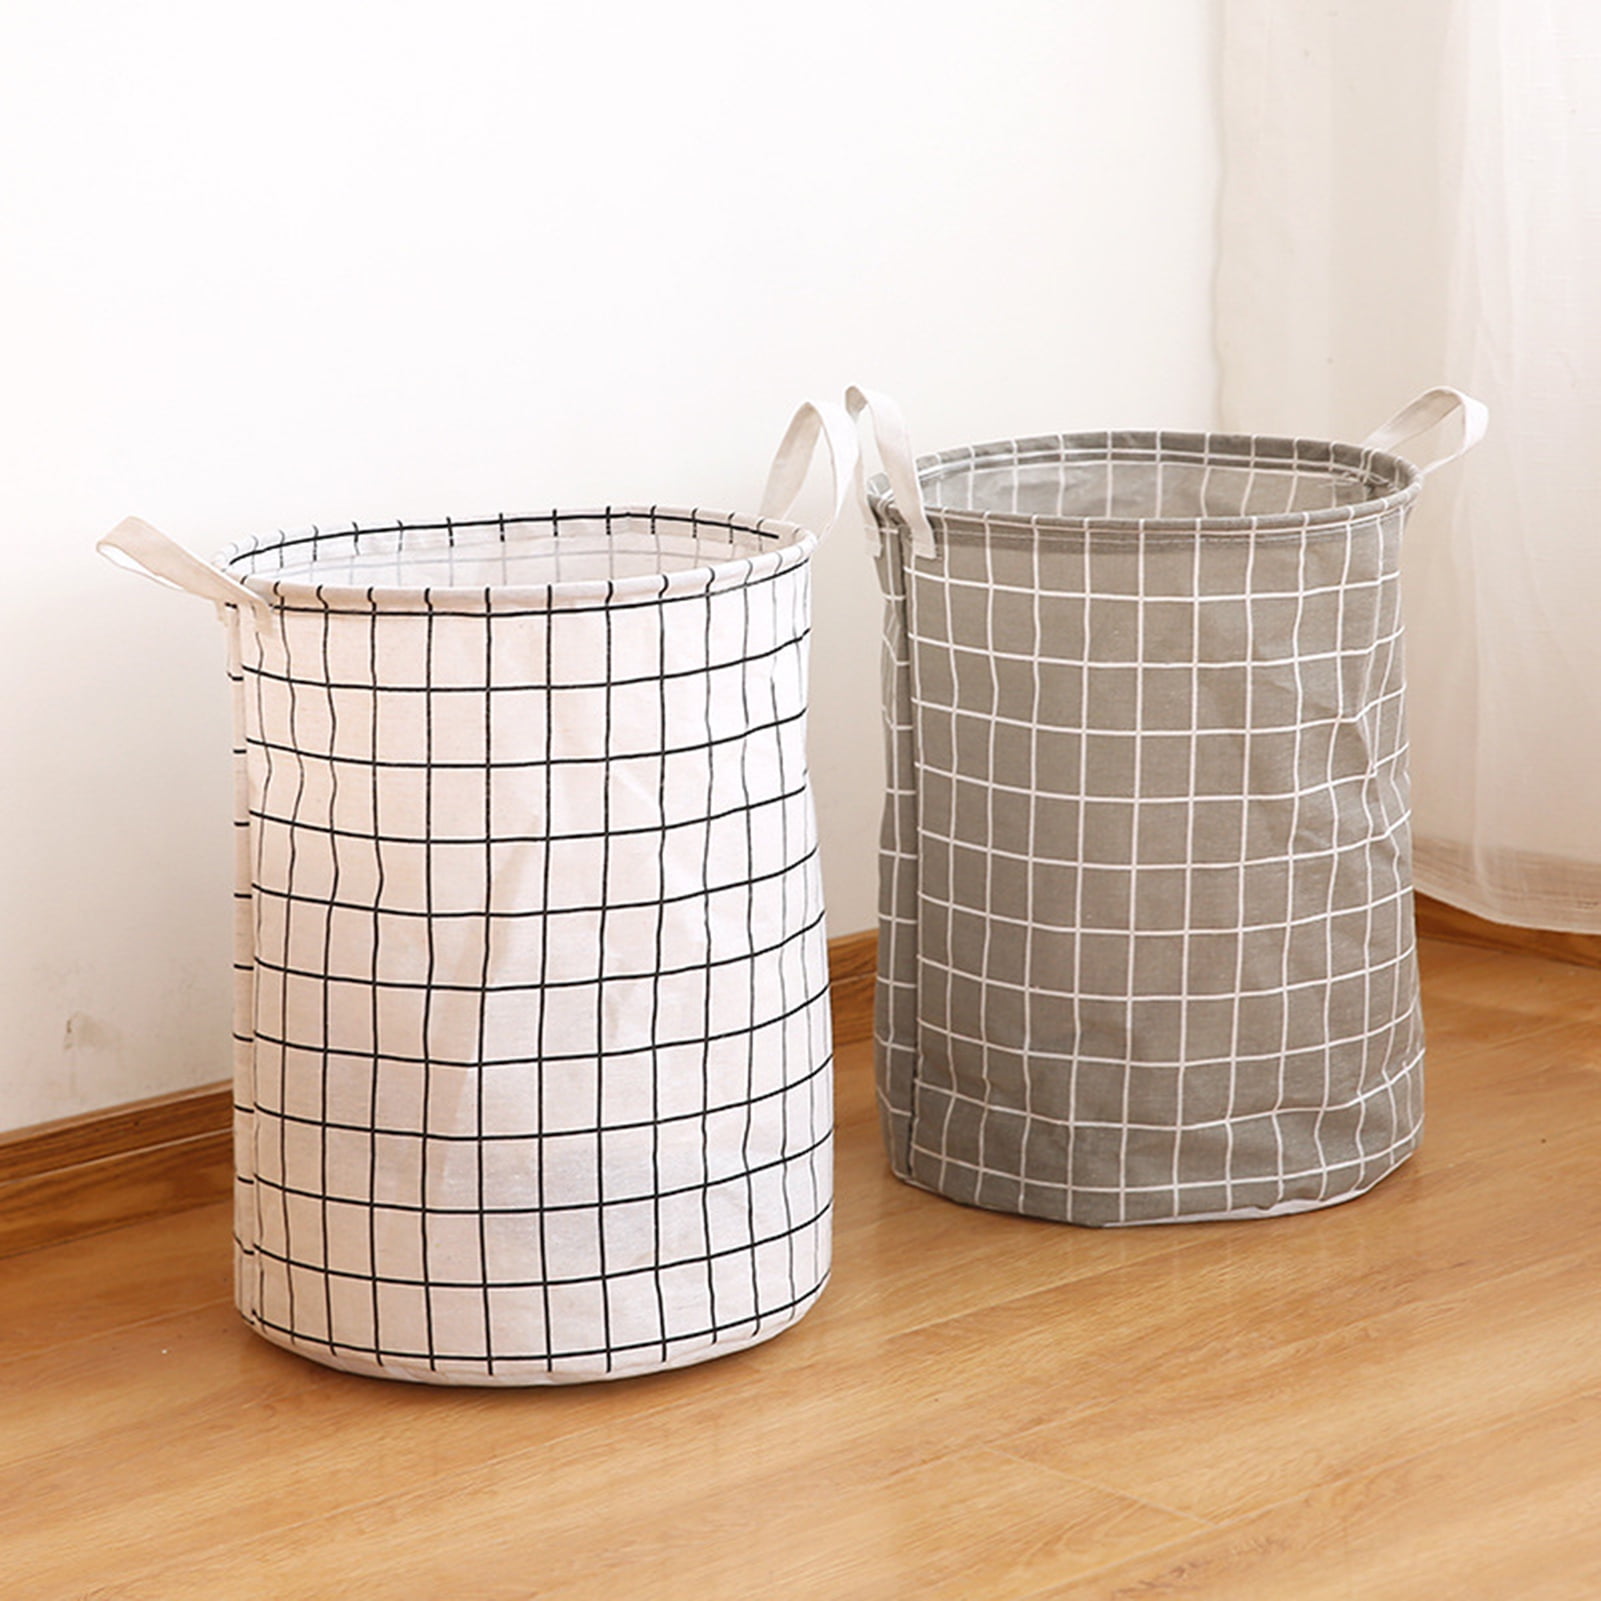 HeysHomey Foldable Laundry Basket Storage Box Waterproof Large Bag